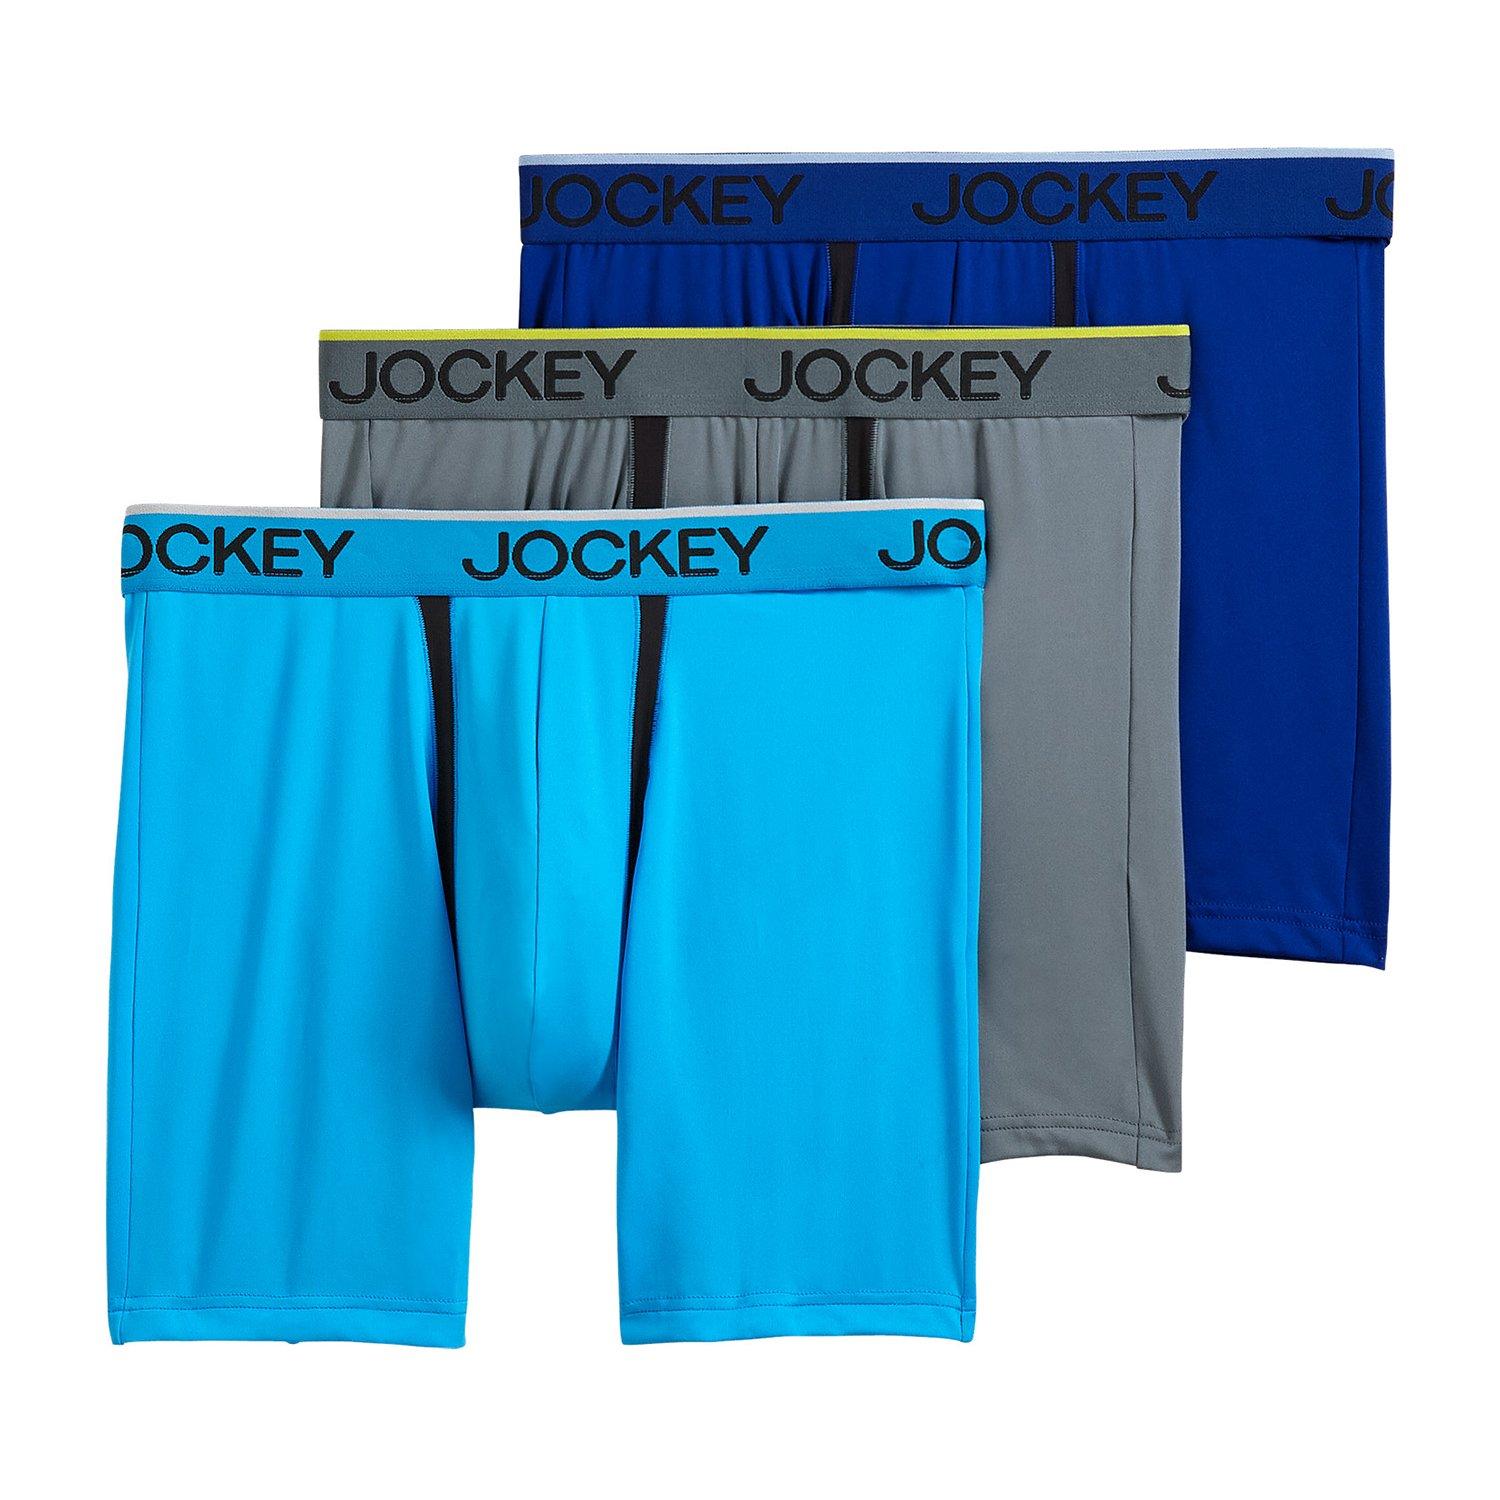 Jockey, Underwear & Socks, 3 Mens Jockey Thongs